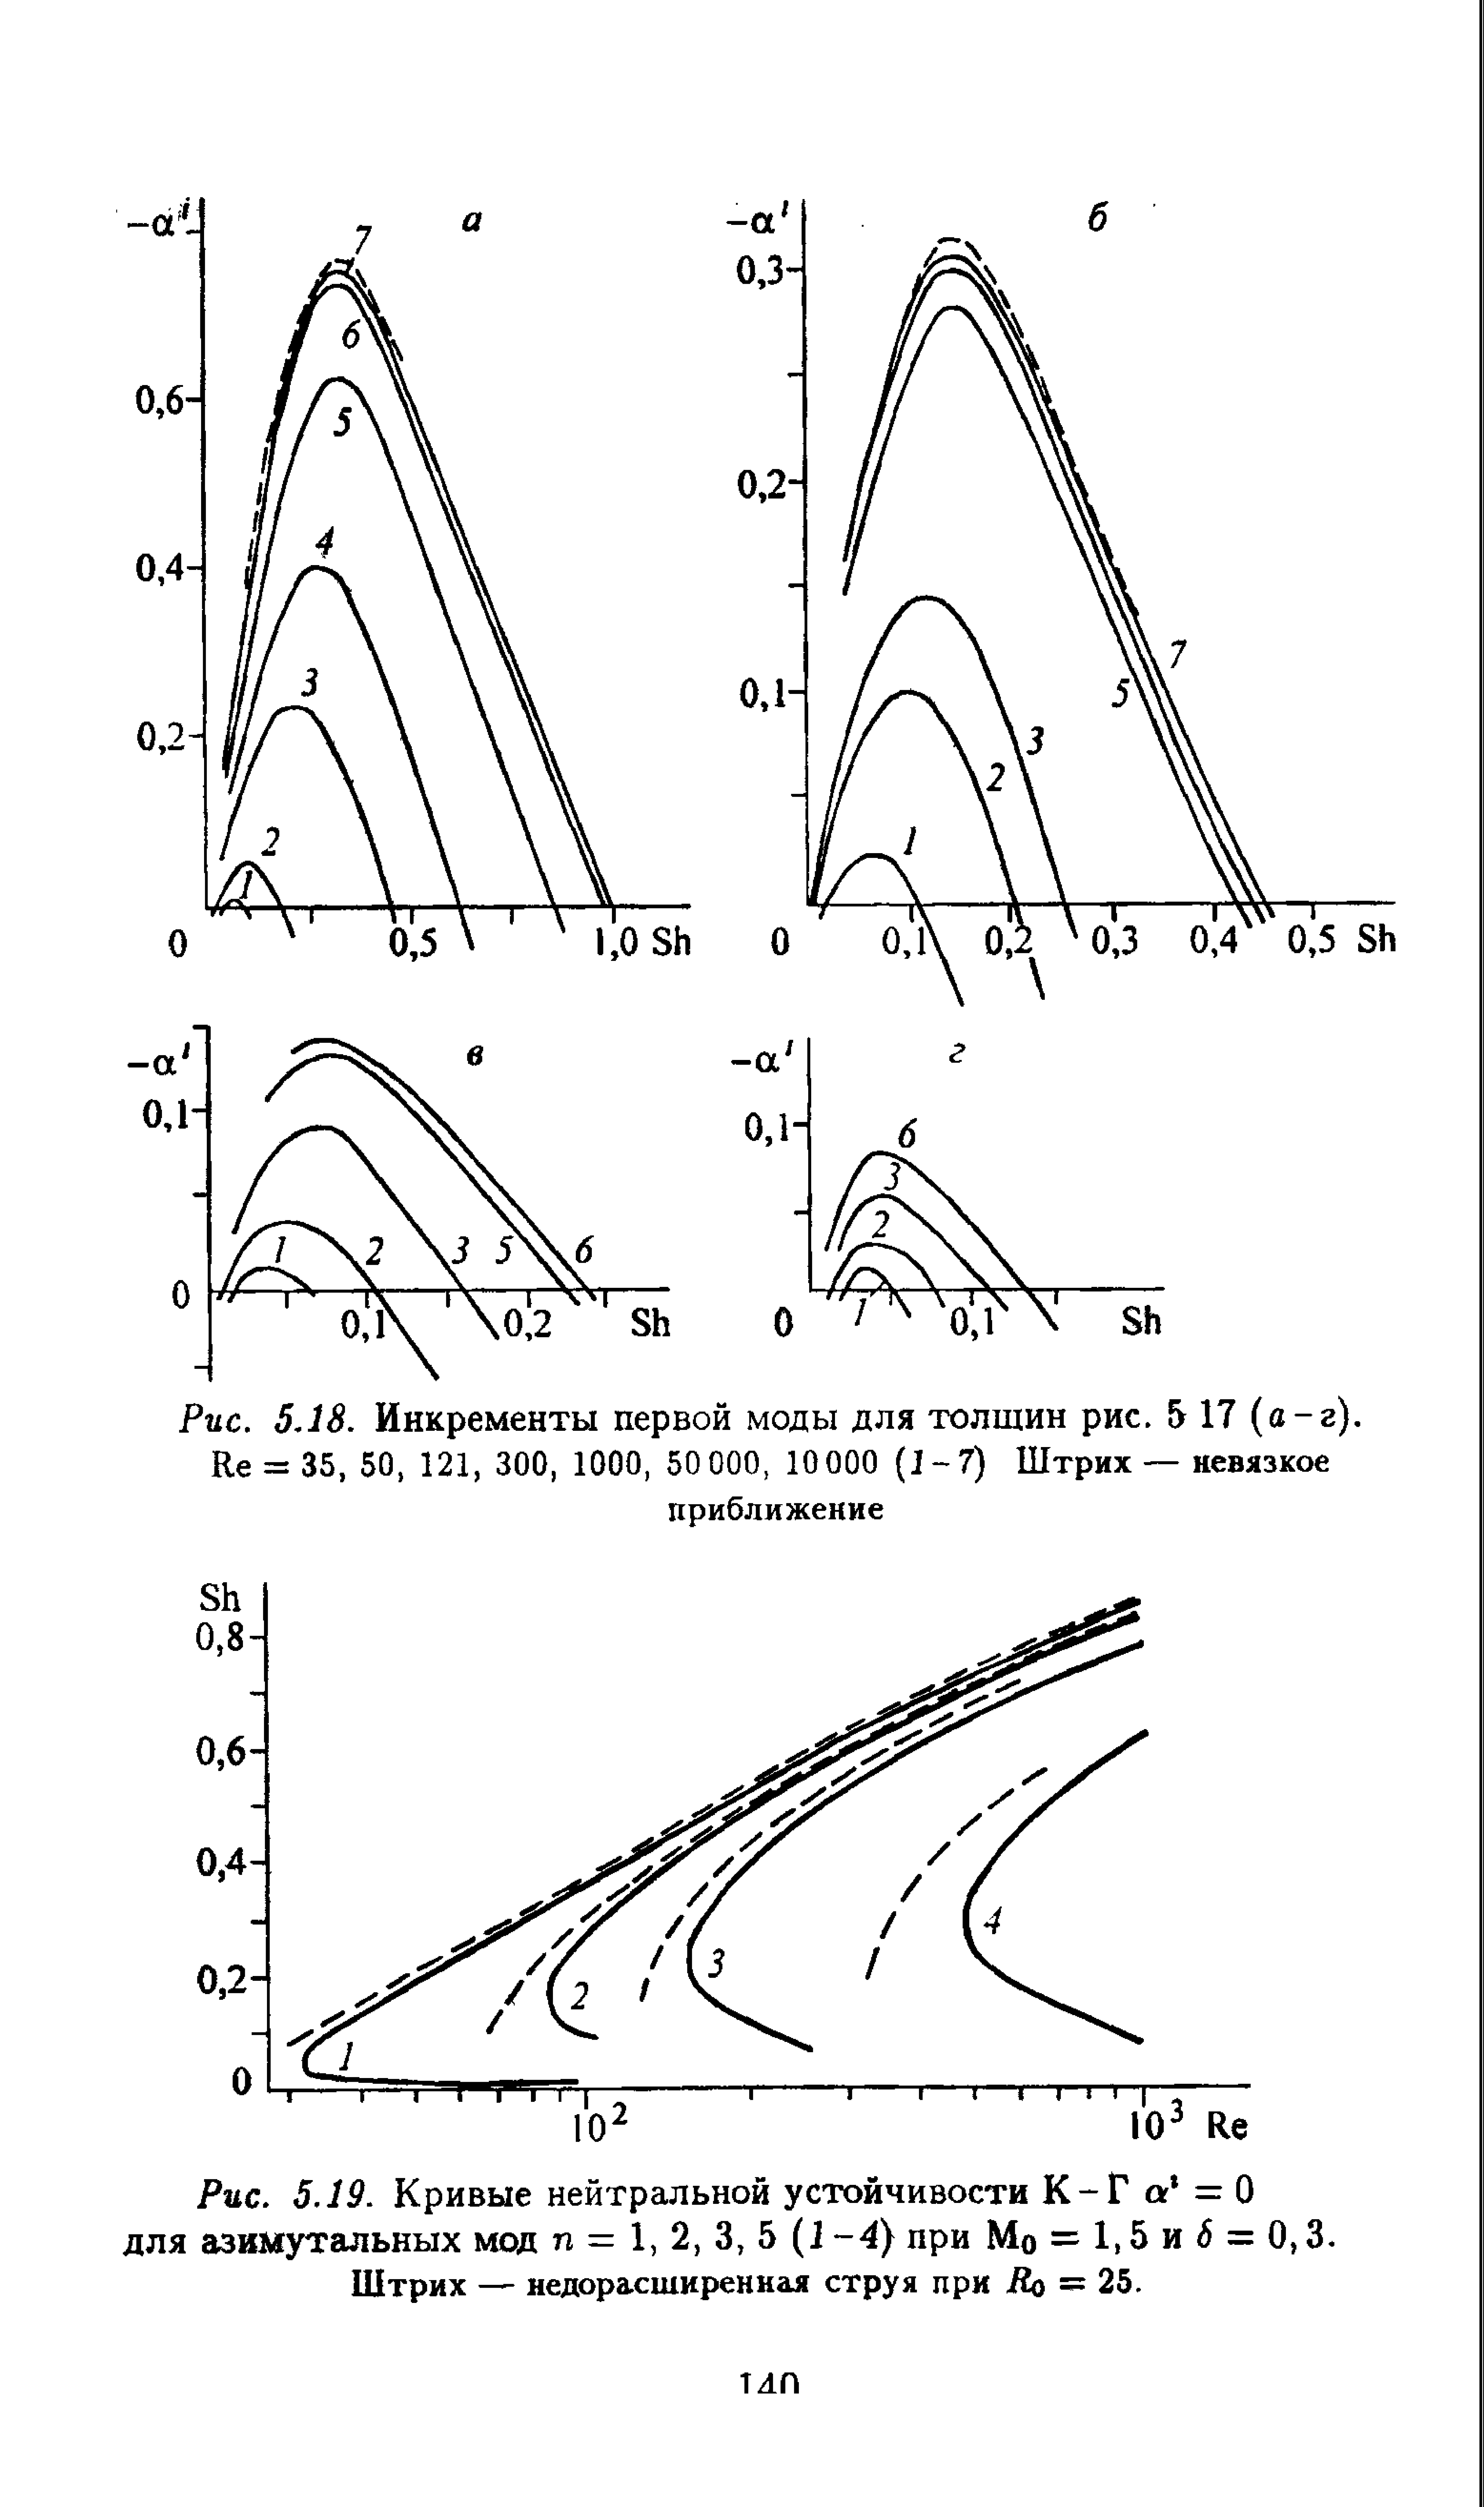 Рис. 5.19. Кривые нейтральной устойчивости К-Г а =0 для азимутальных мод п = 1, 2, 3, 5 (1 -4) при Мо = 5 и б = 0,3.
